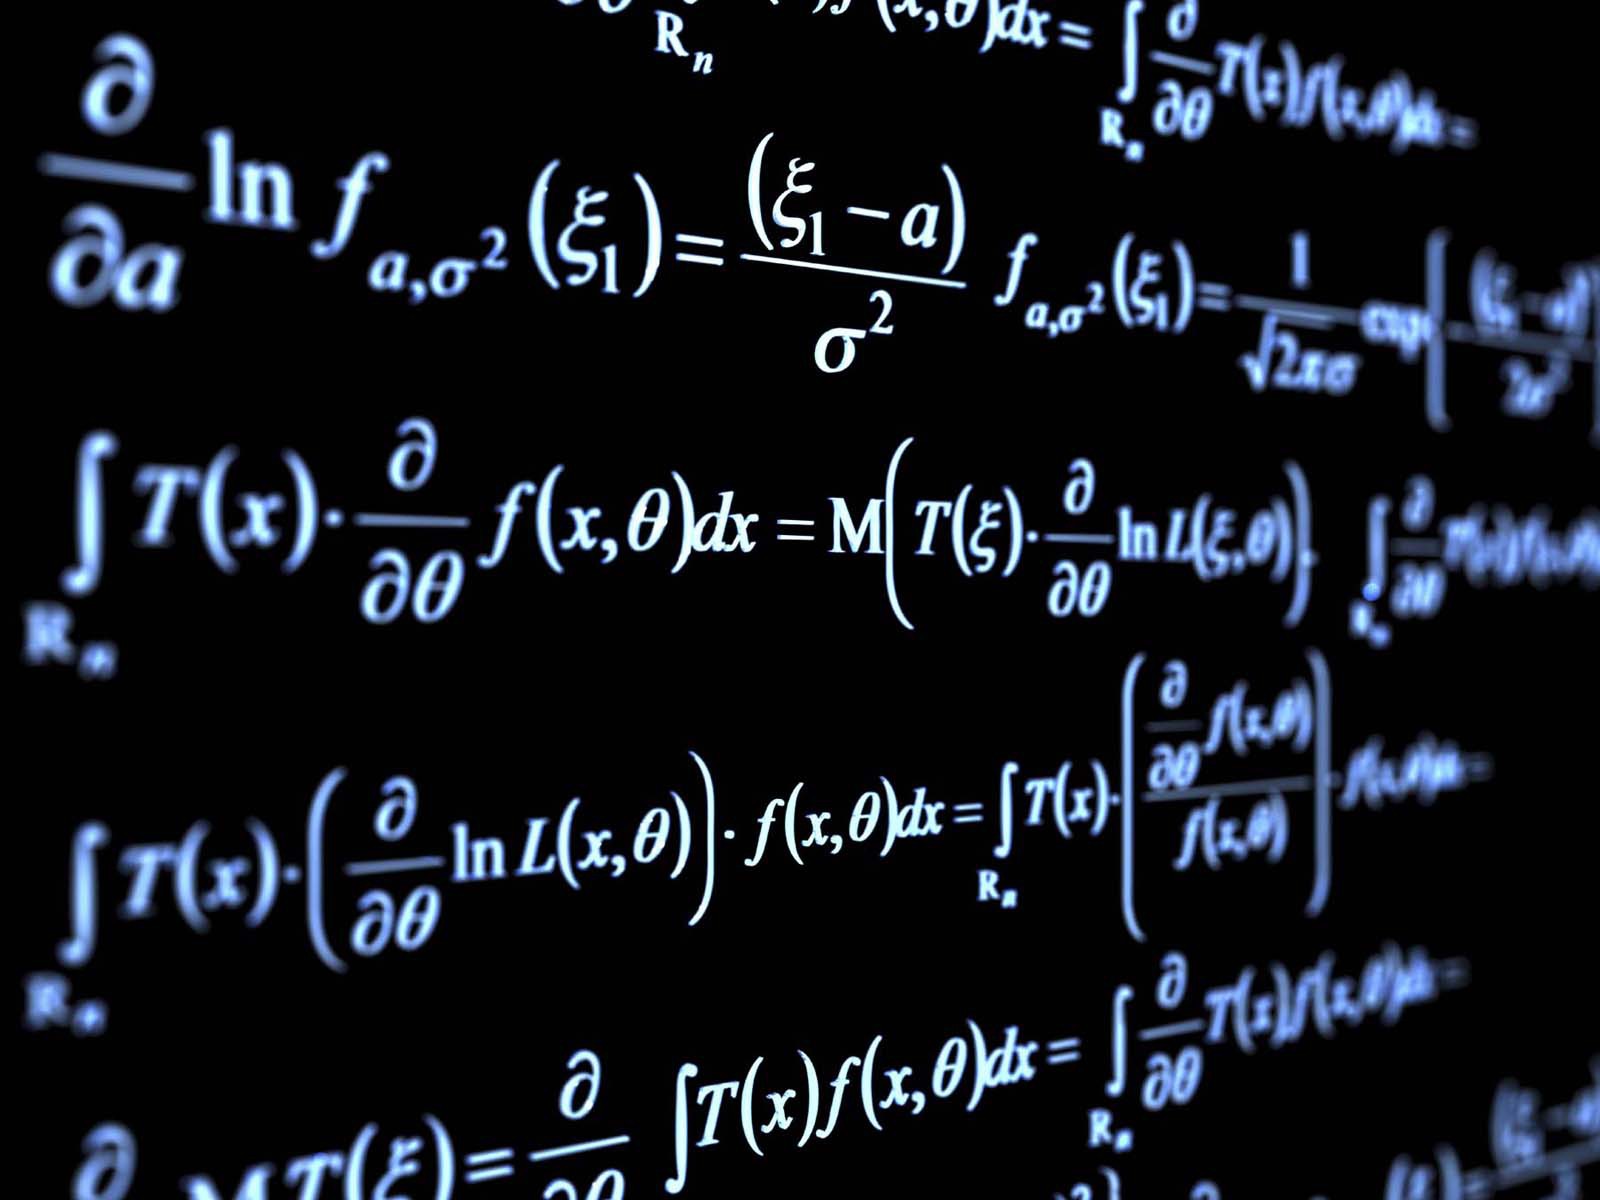 screen showing a bunch of formulas